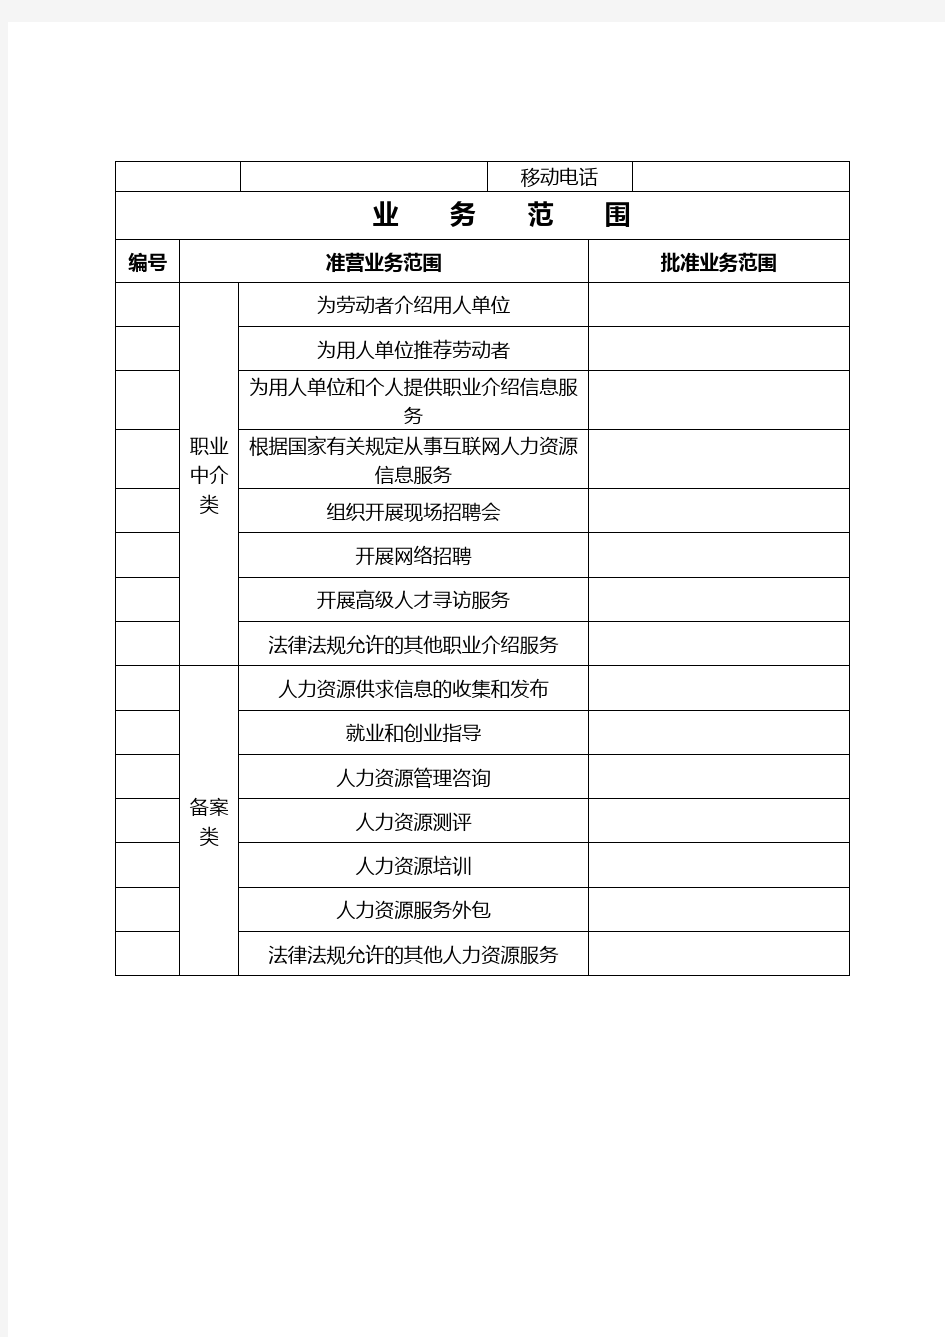 广州市人力资源服务机构许可证补办申请表